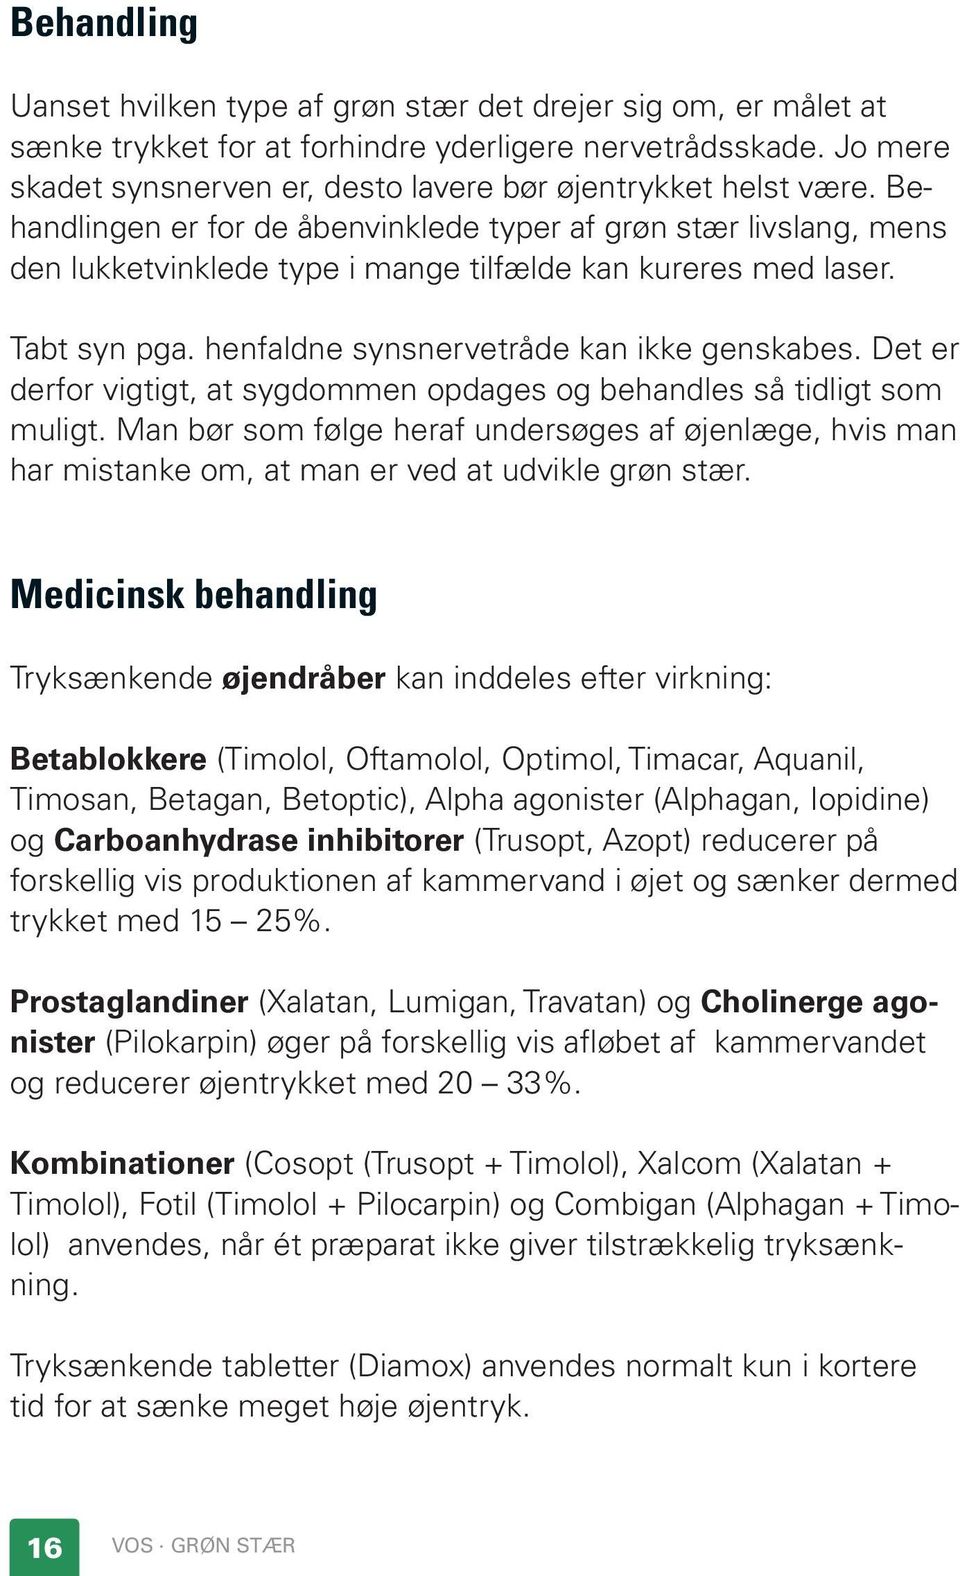 Grøn stær. (Glaukom) - PDF Gratis download